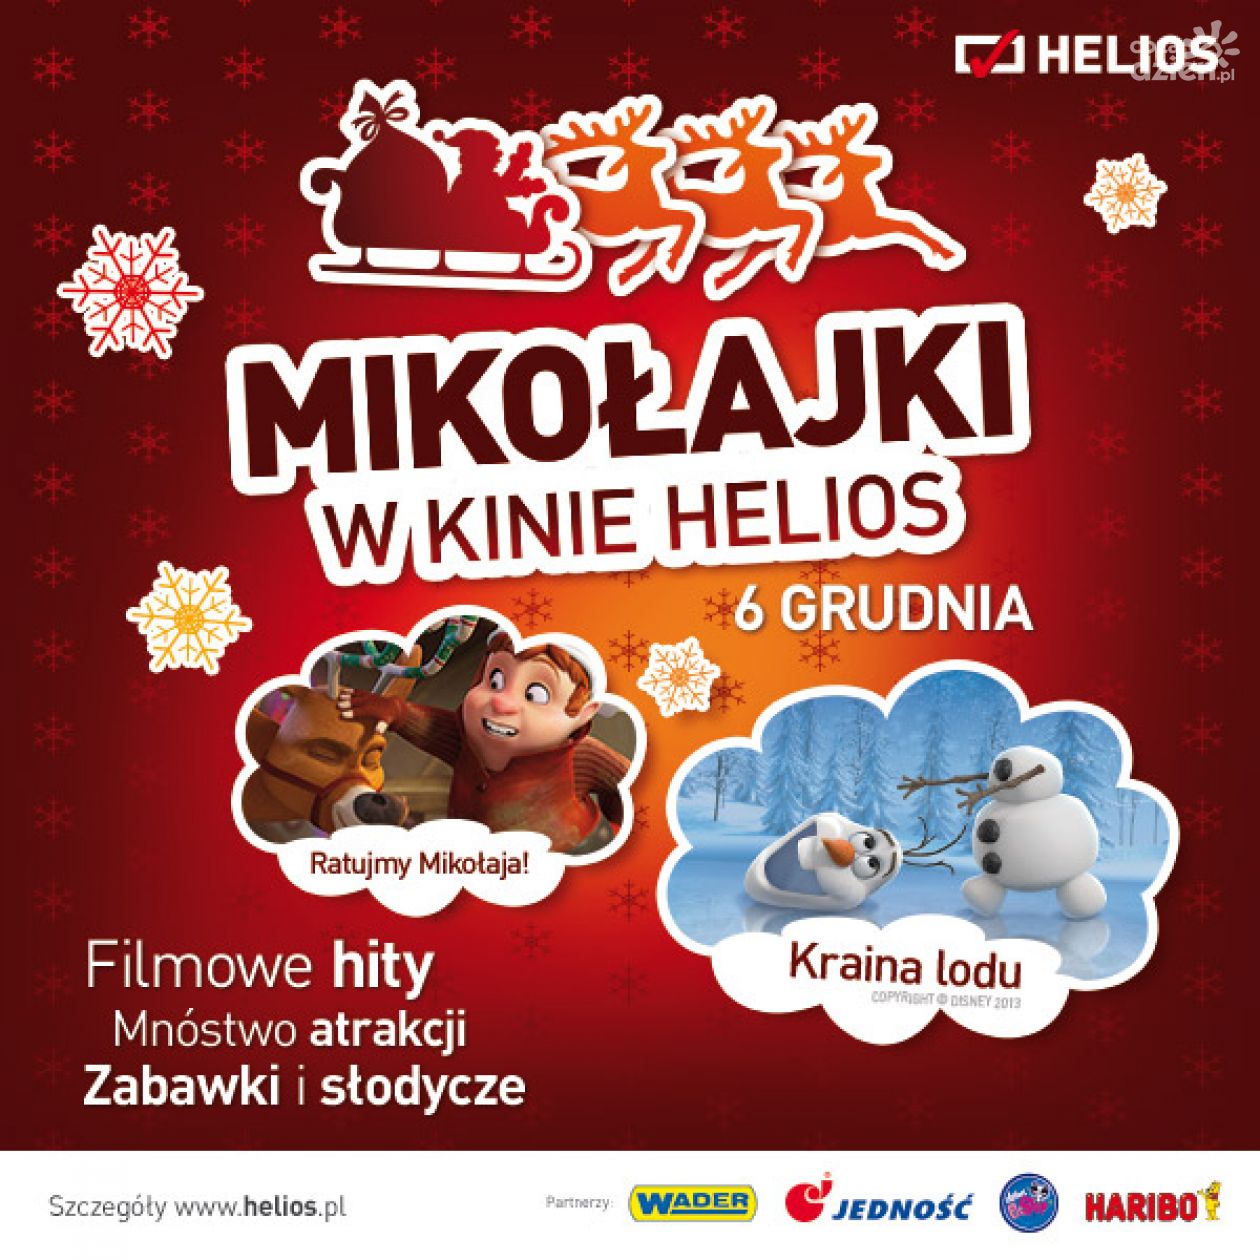 Mikołajki w kinie Helios - filmy, zabawki i słodycze!